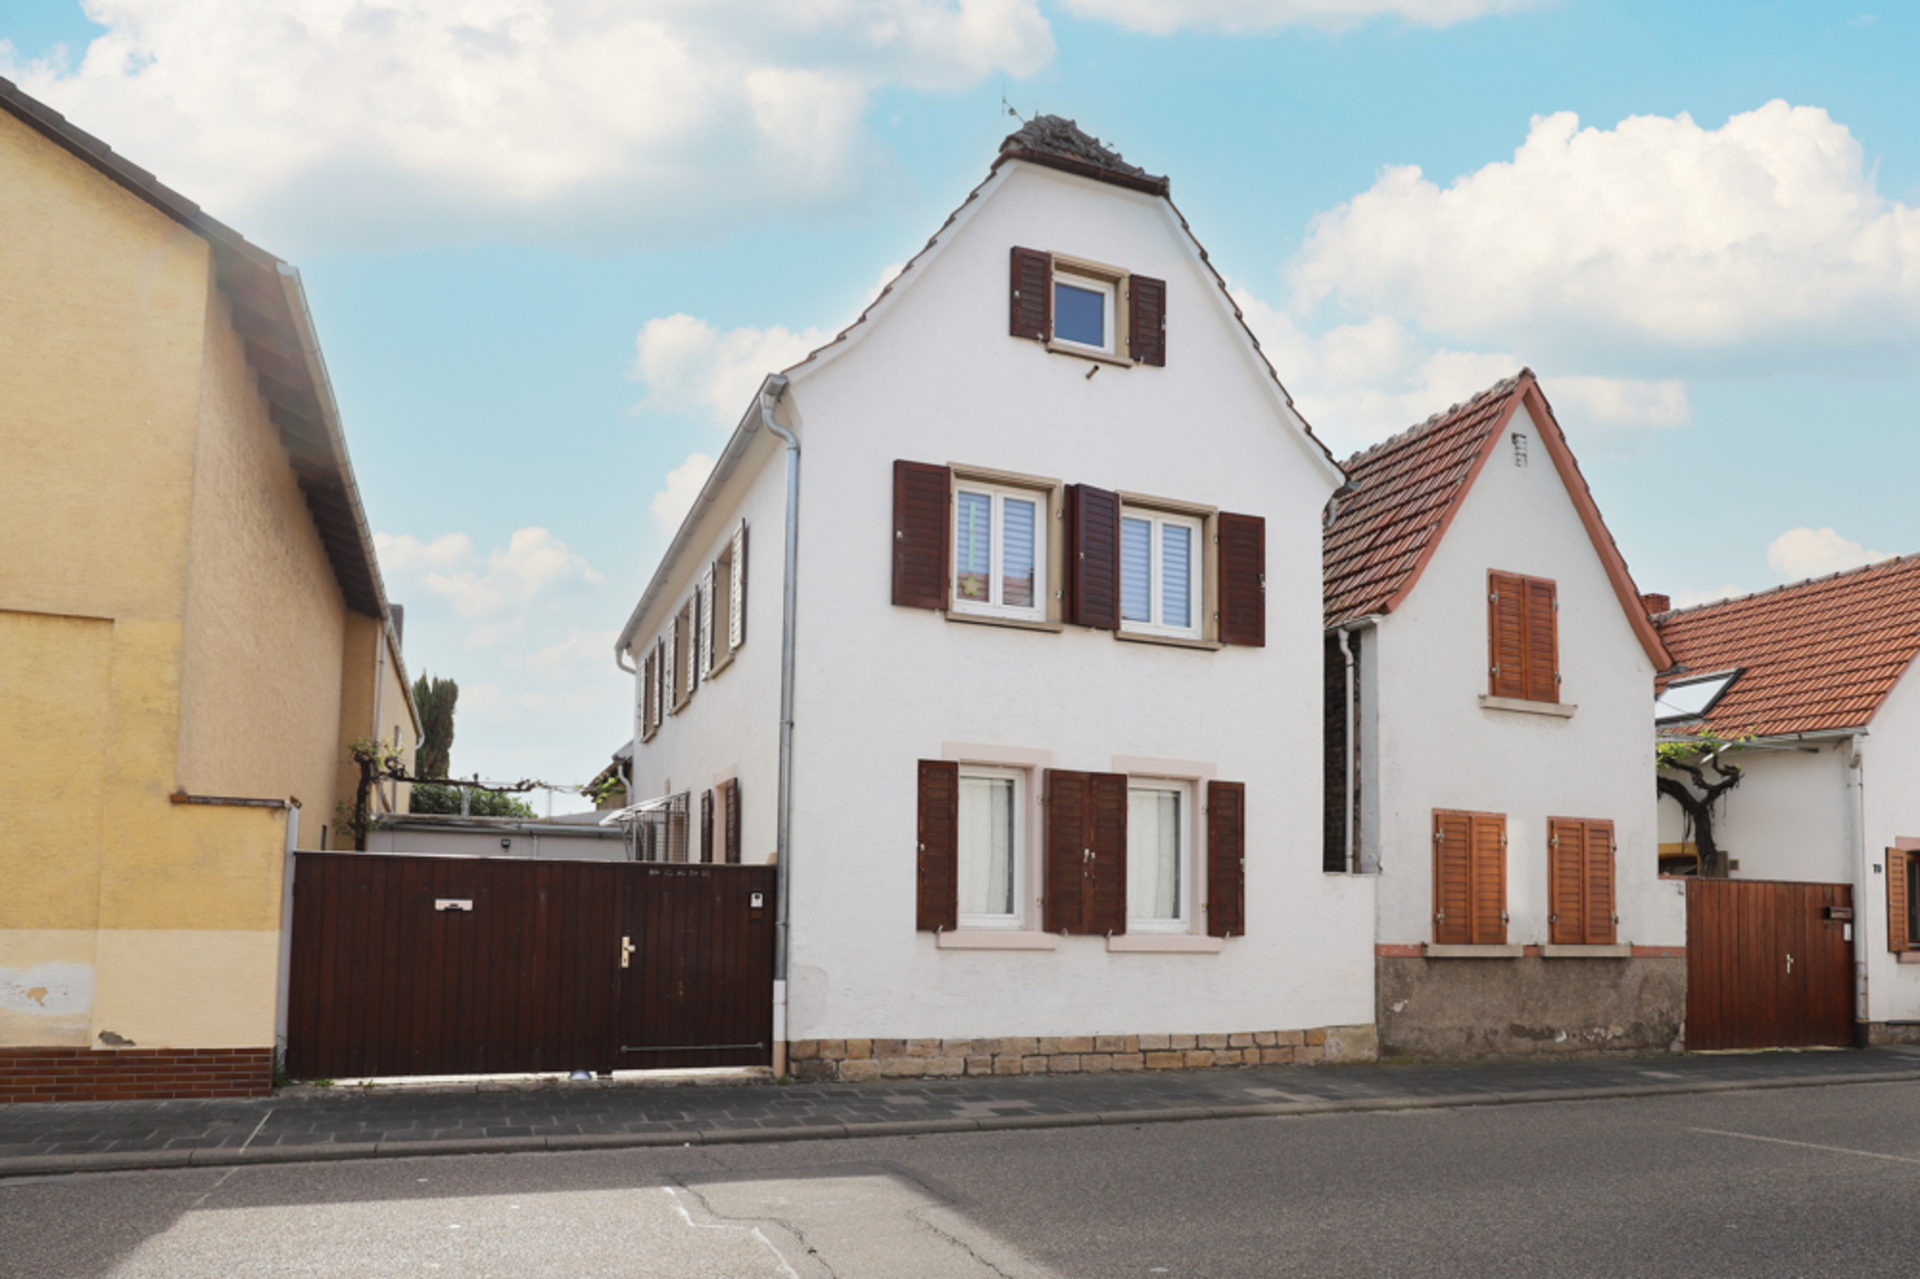 Gepflegtes Einfamilienhaus mit Garage und Garten in zentrumsnaher Lage von Haßloch, 67454 Haßloch, Einfamilienhaus